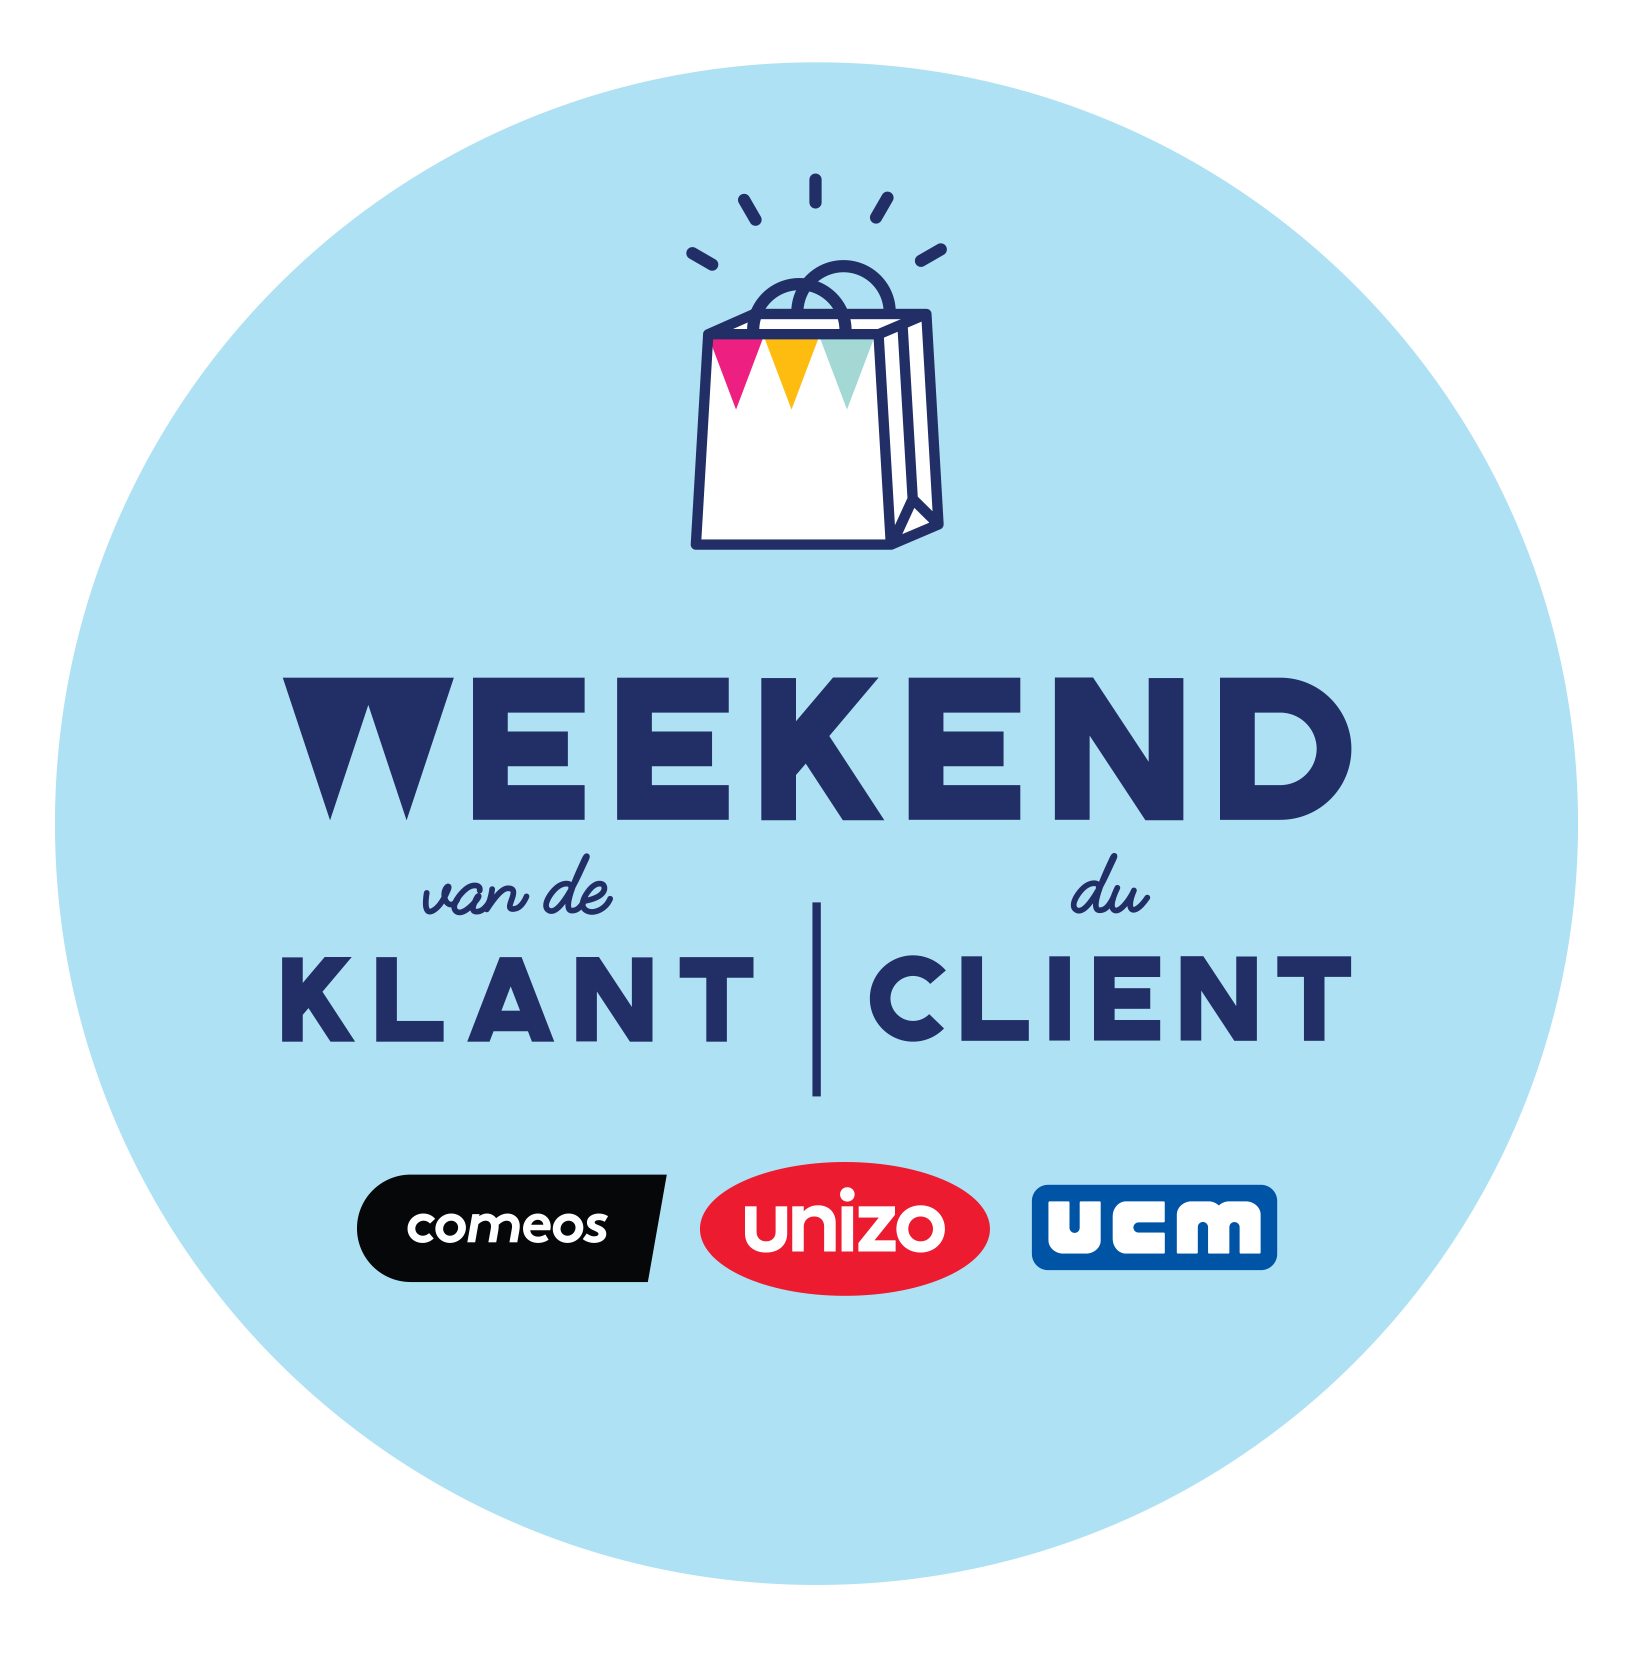 Logo Weekend van de Klant - Weekend du Client